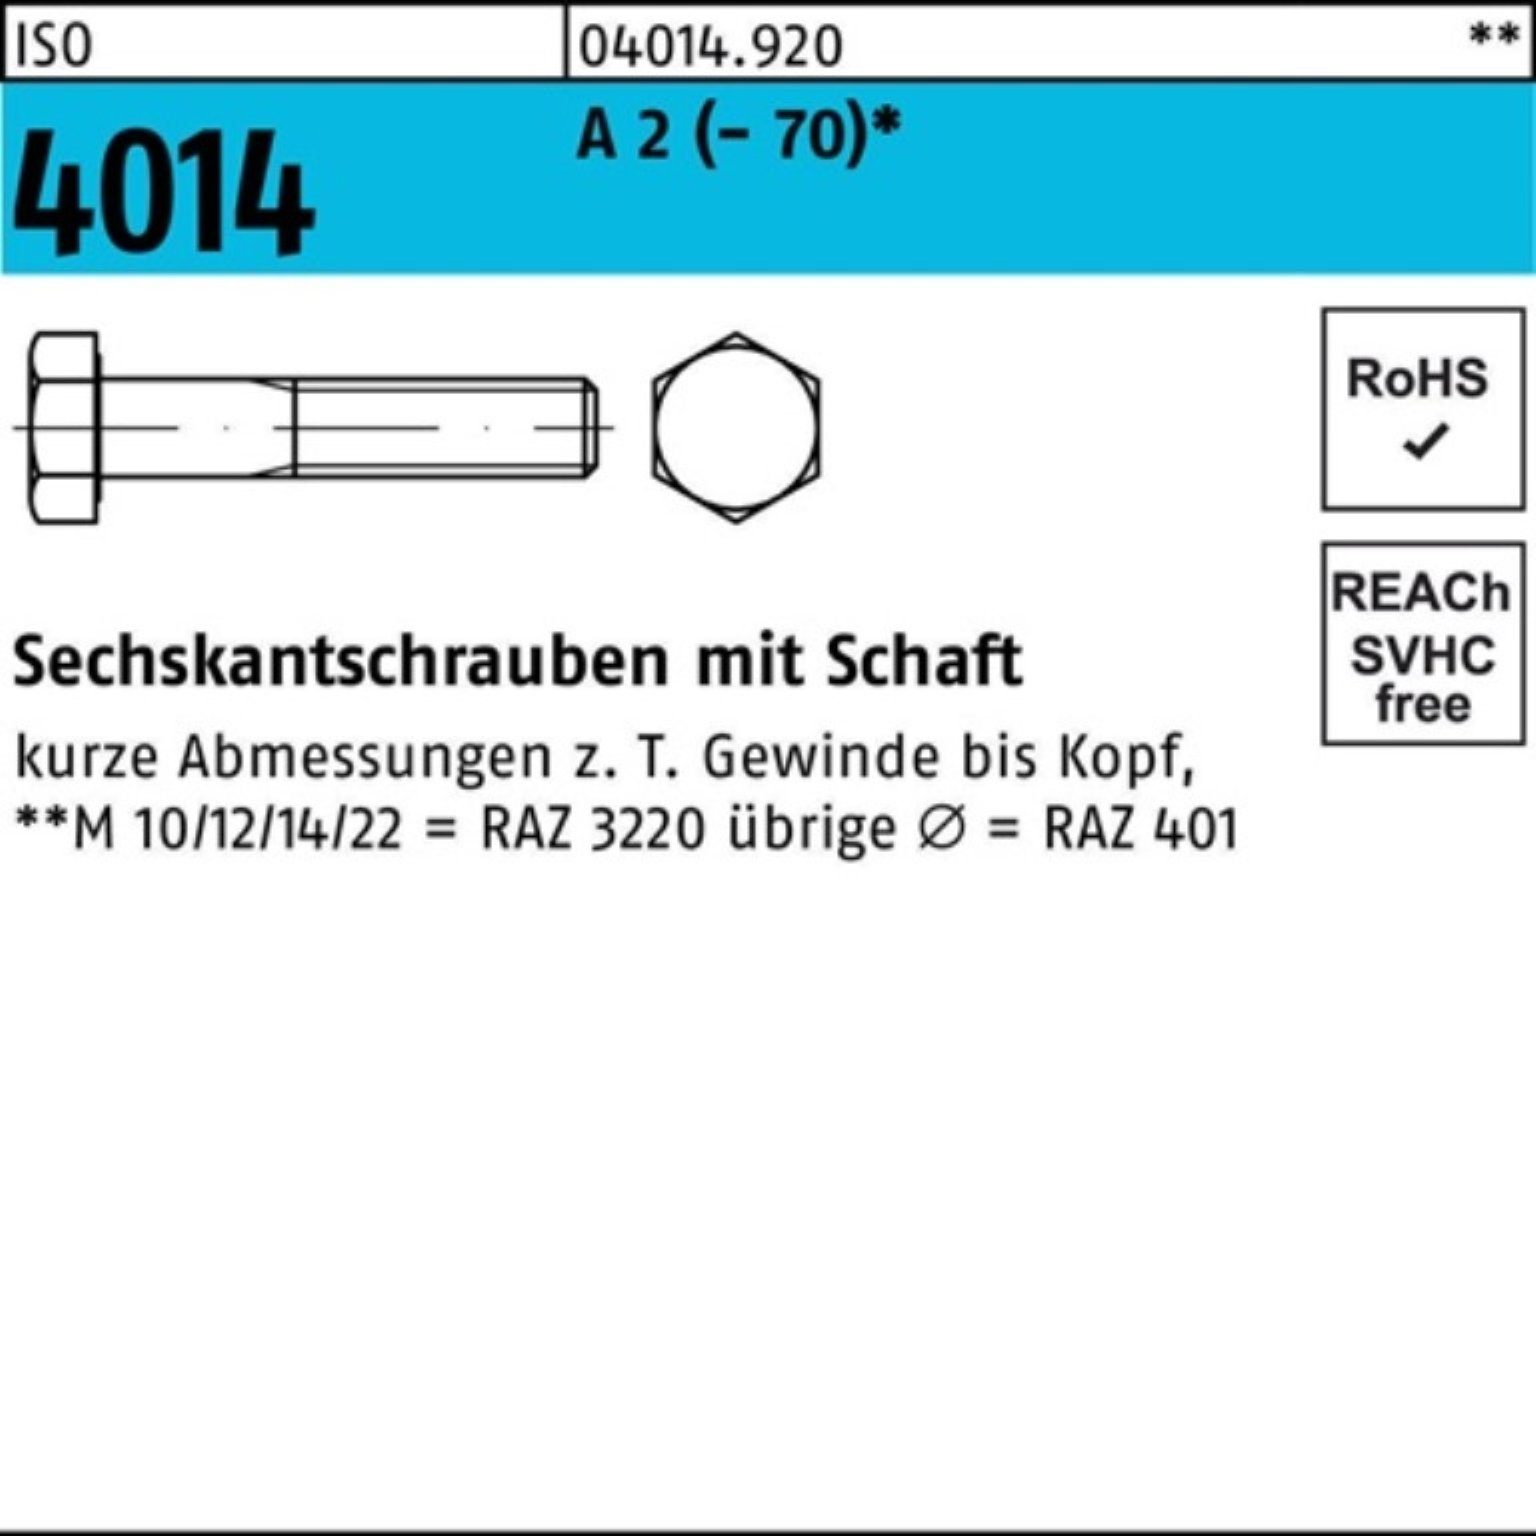 Bufab Sechskantschraube 100er Pack Sechskantschraube ISO 4014 Schaft M24x 80 A 2 (70) 1 Stü